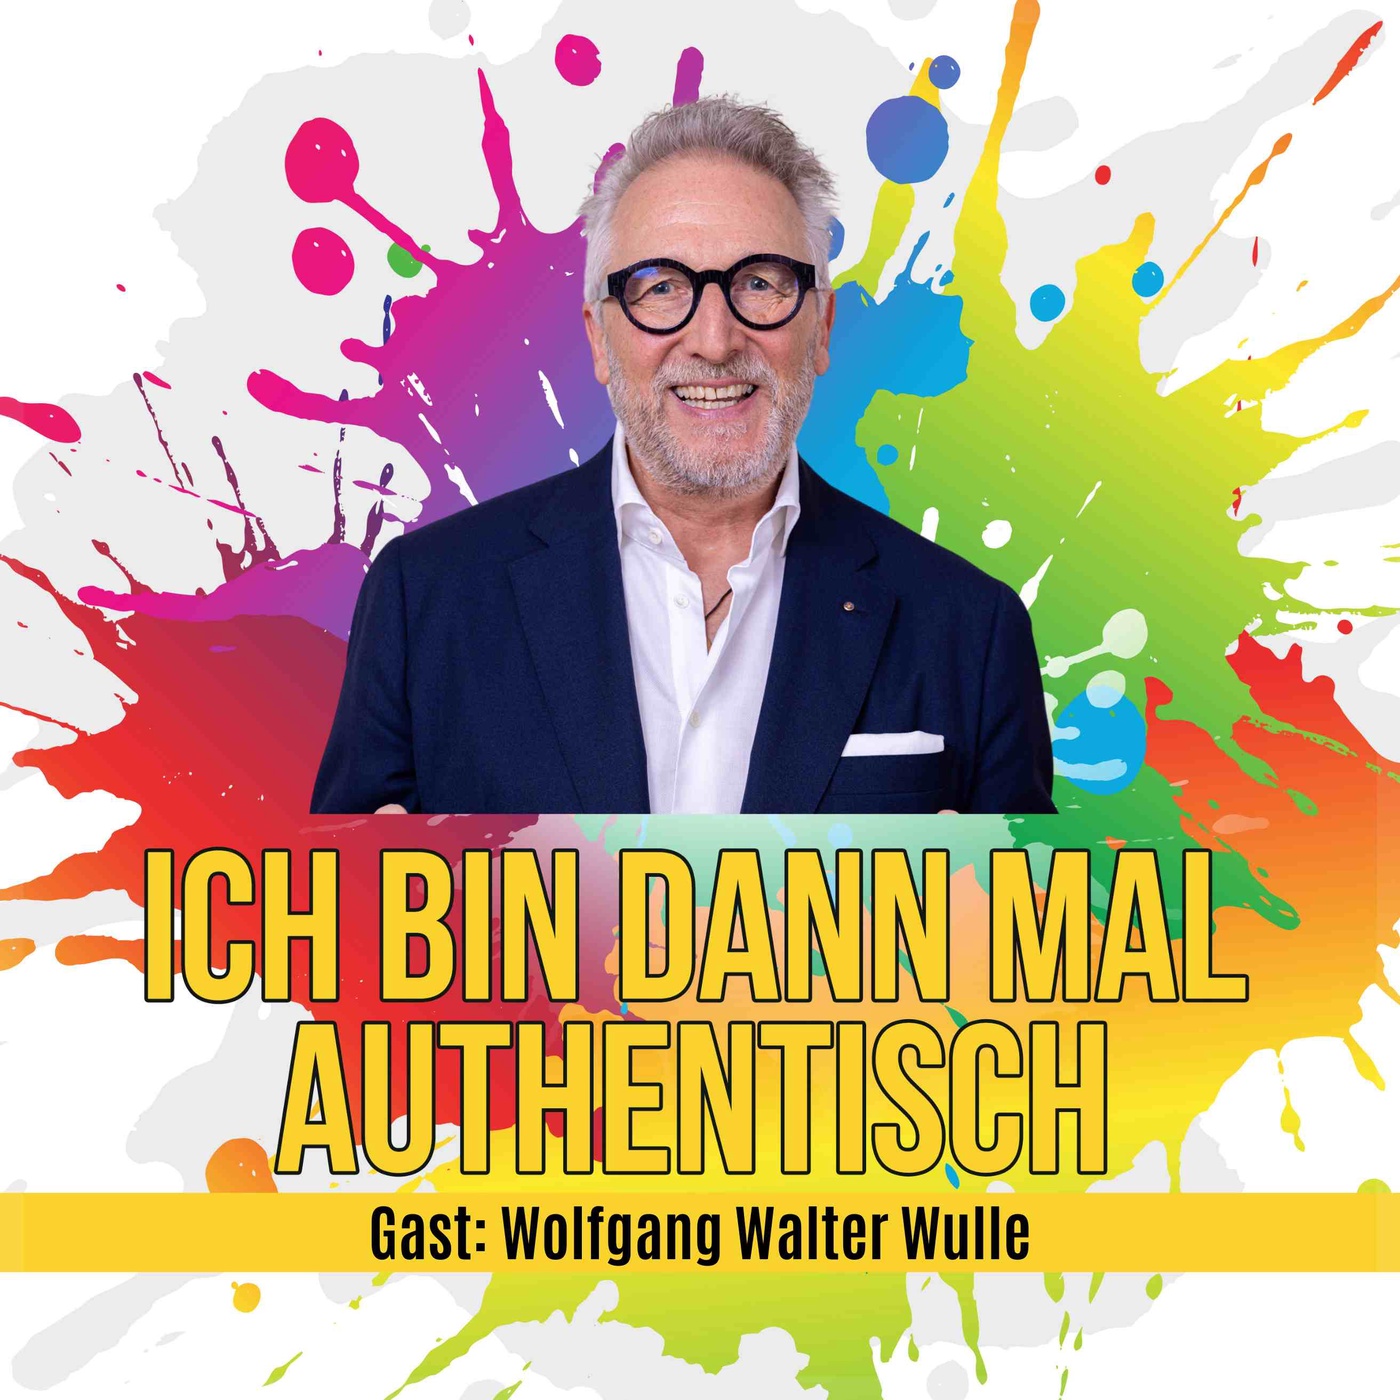 Wolfgang Walter Wulle: Mutig entscheiden und machen.